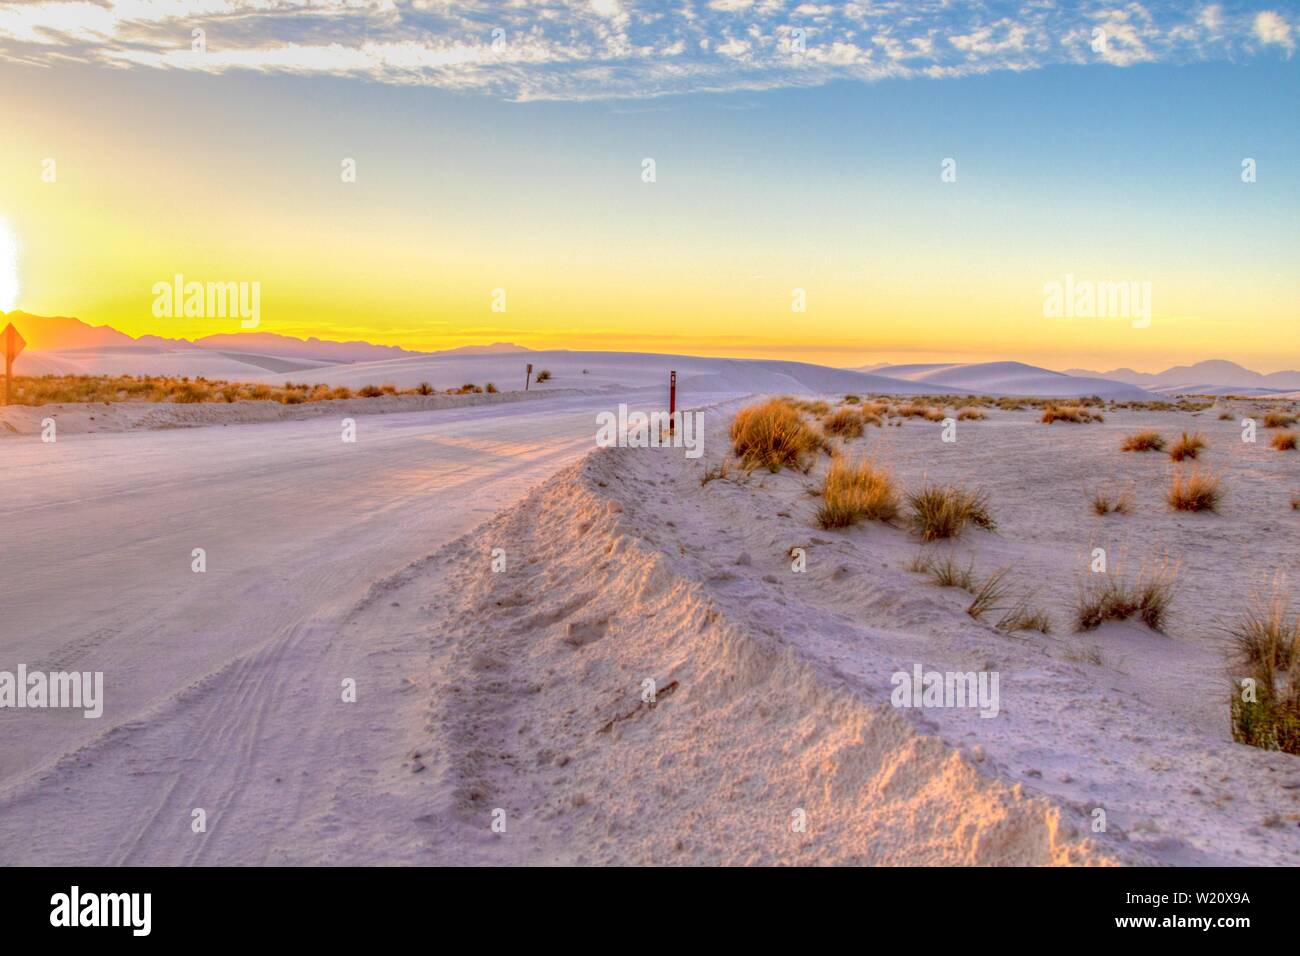 Viaje por carretera al desierto. Hermosa puesta de sol en el desierto con carretera rural remota serpenteando a través de las dunas de arena del Monumento Nacional White Sands en Nuevo México Foto de stock